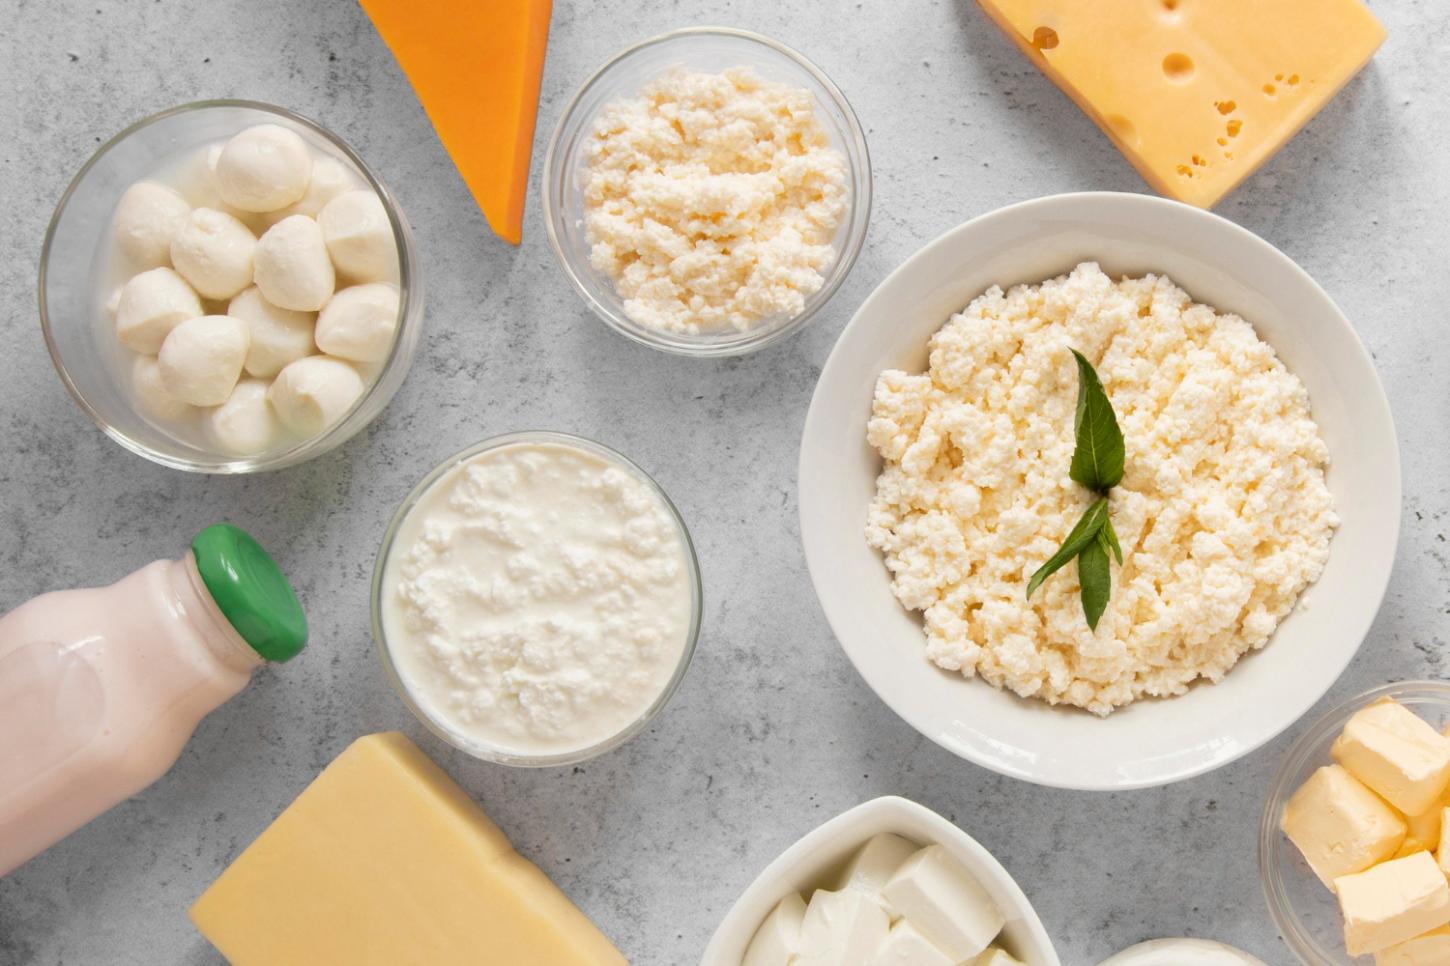 O que é mais saudável cream cheese ou creme de ricota? – Comparativo Nutricional!